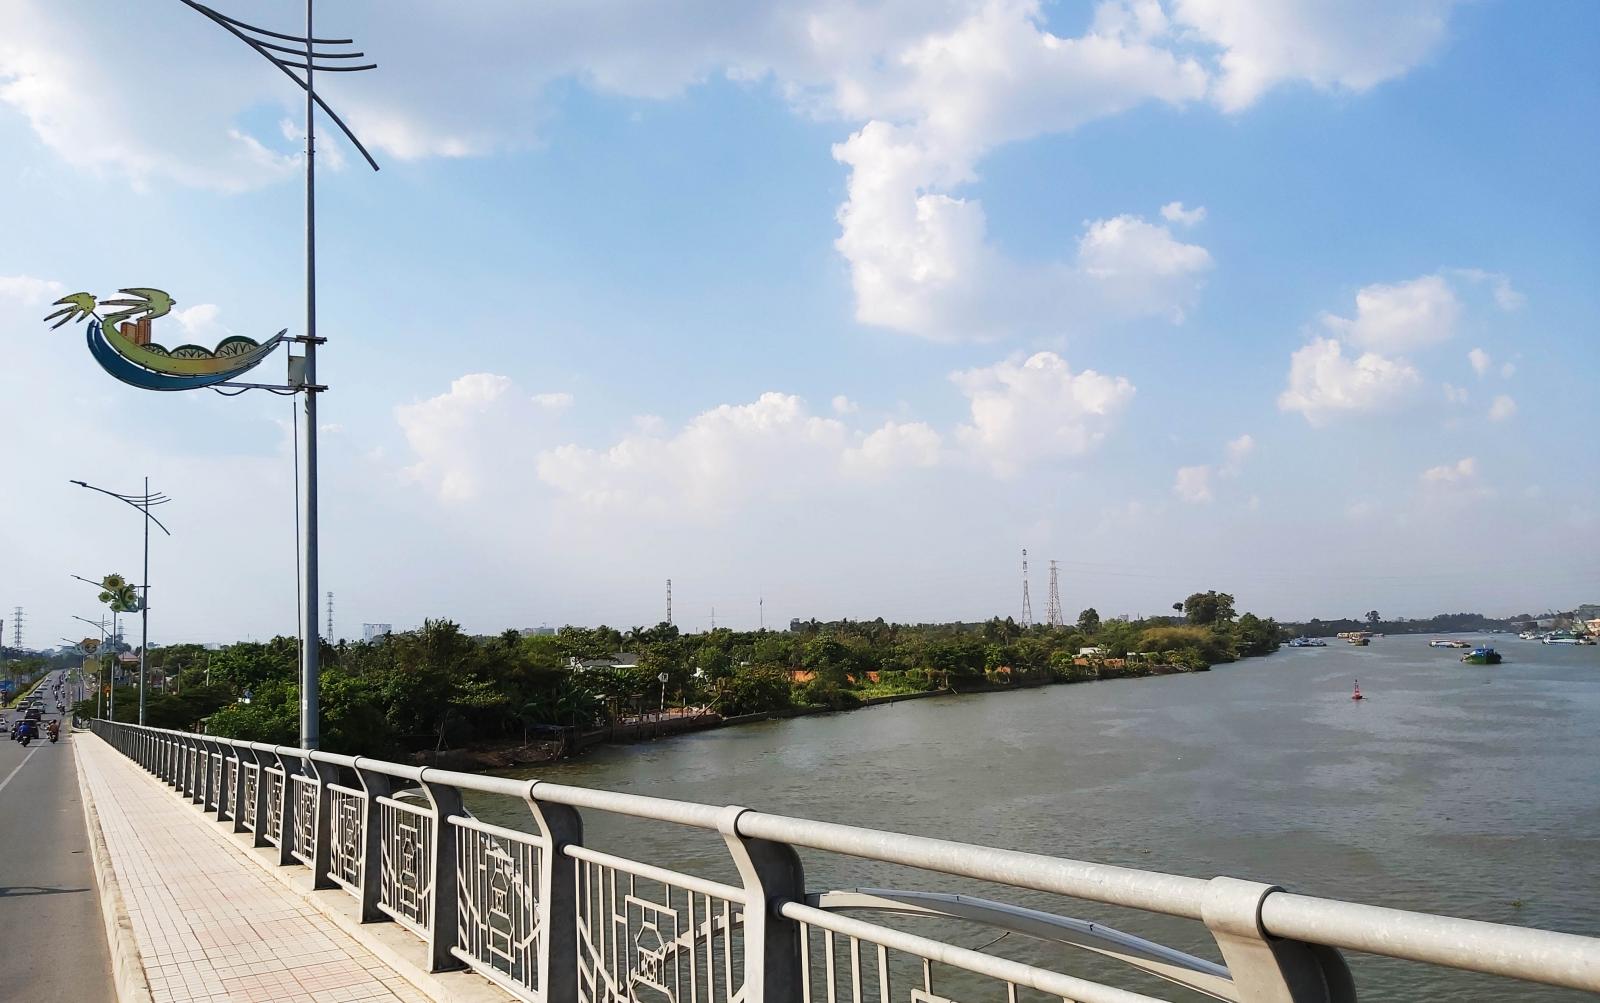 Đầu tư 2 dự án cầu đường hơn 7.000 tỷ đồng ở Biên Hòa